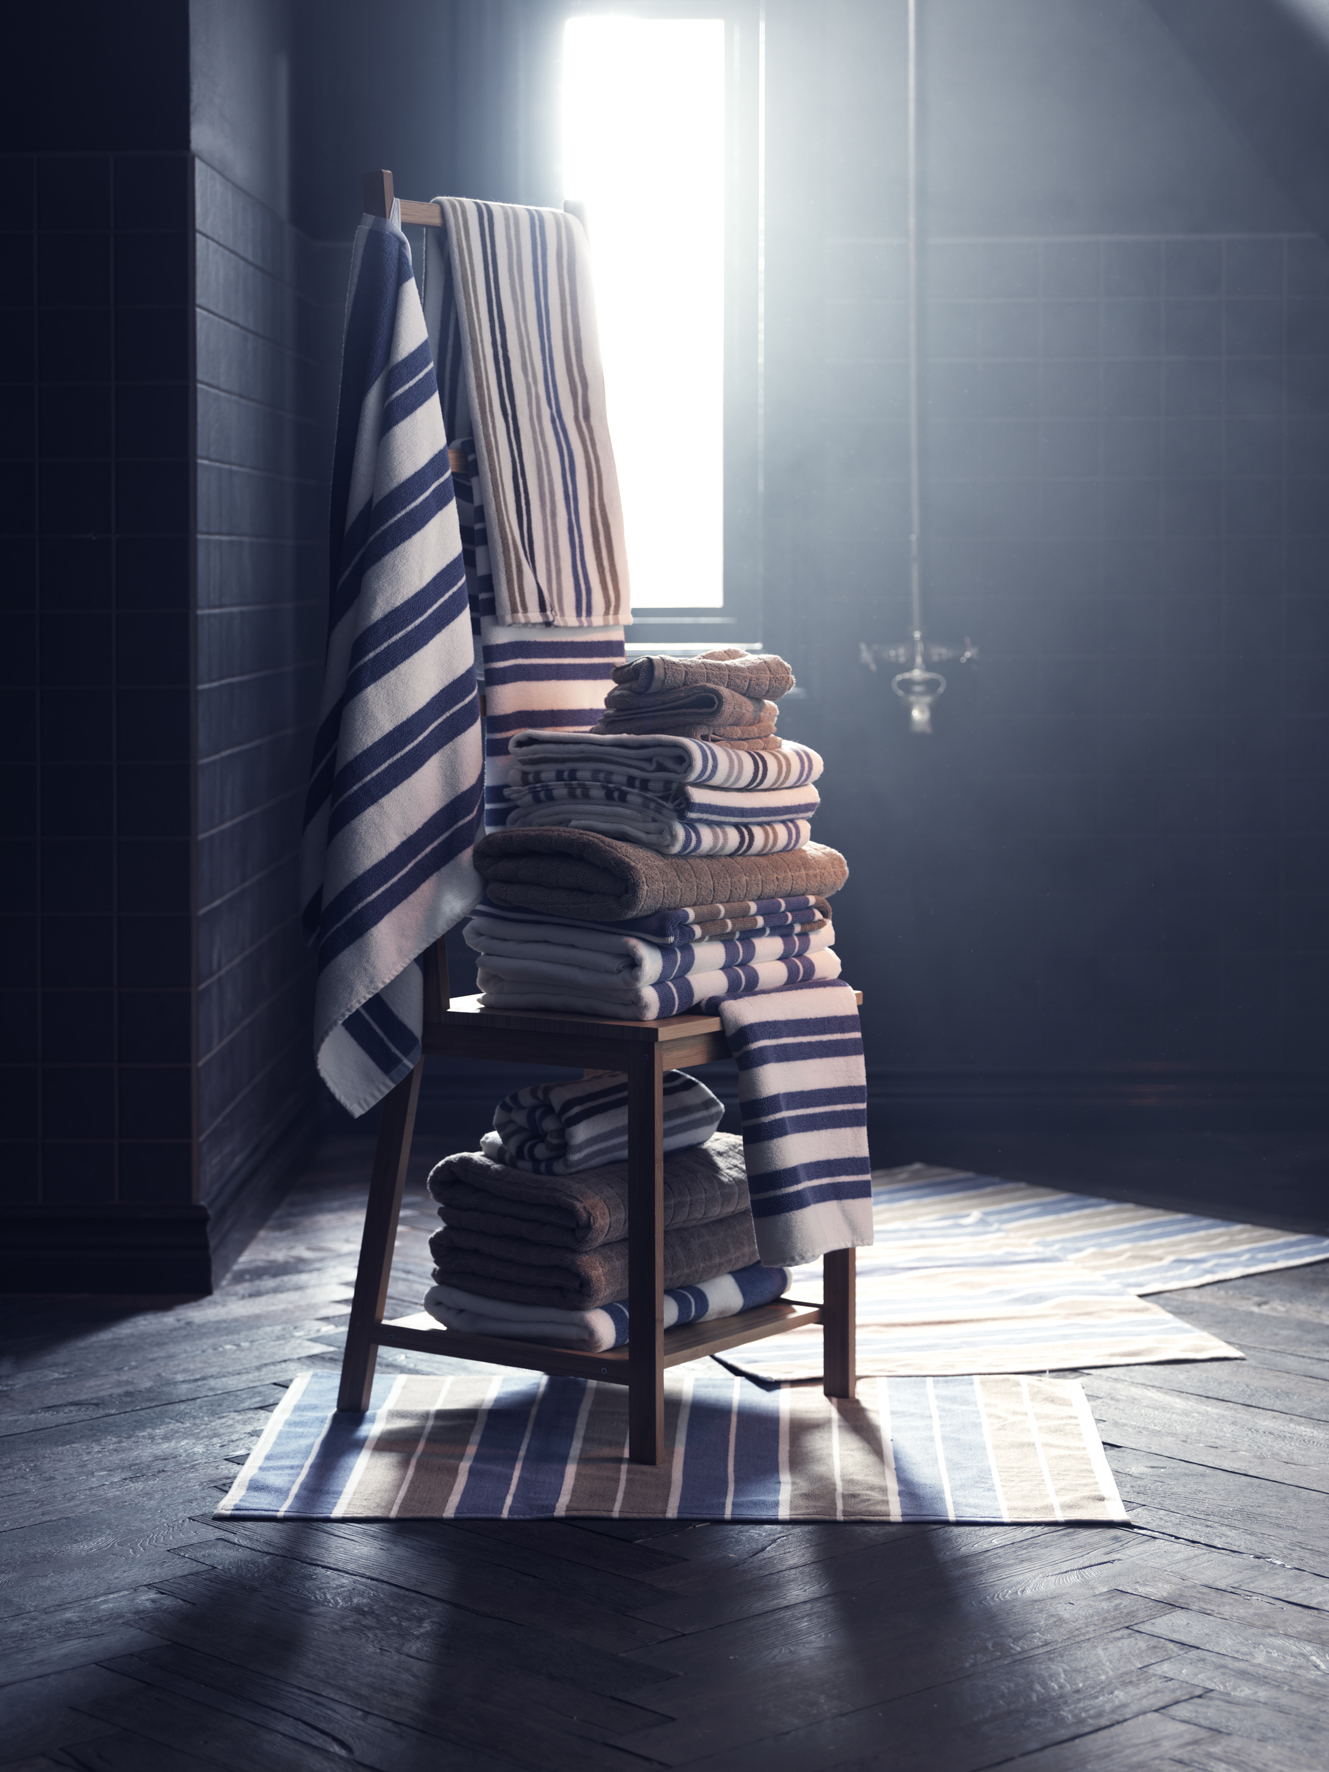 Heerlijk warme badhanddoeken van Ikea